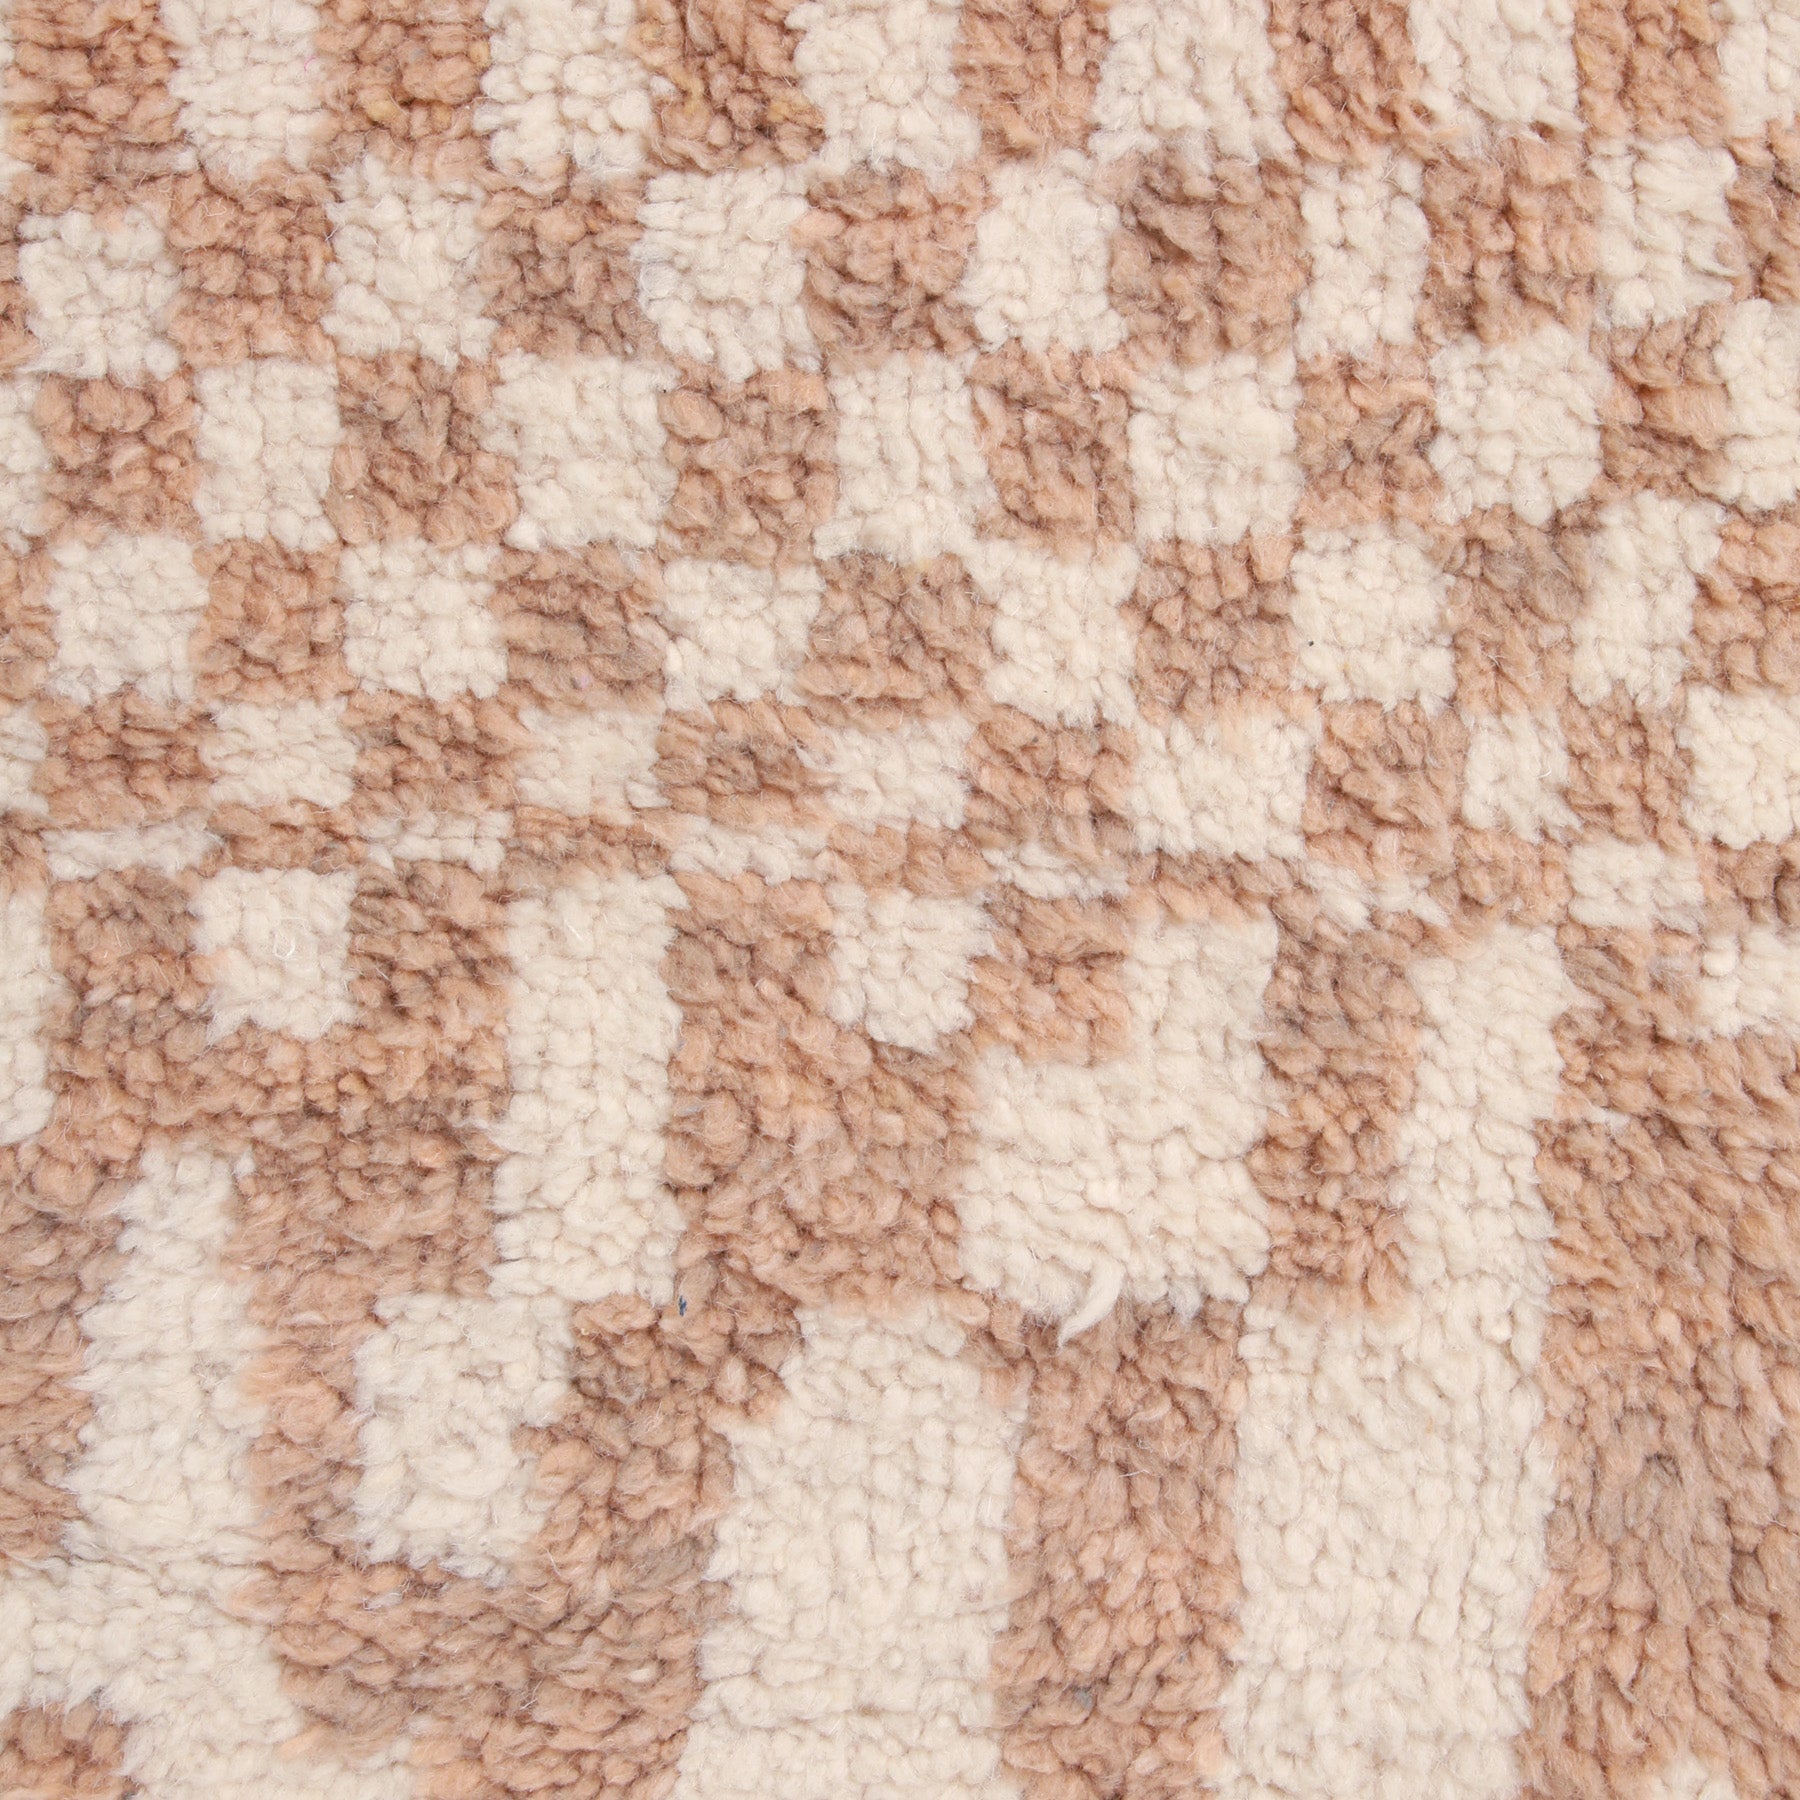 dettaglio della lana morbida e corta di un tappeto beni ourain